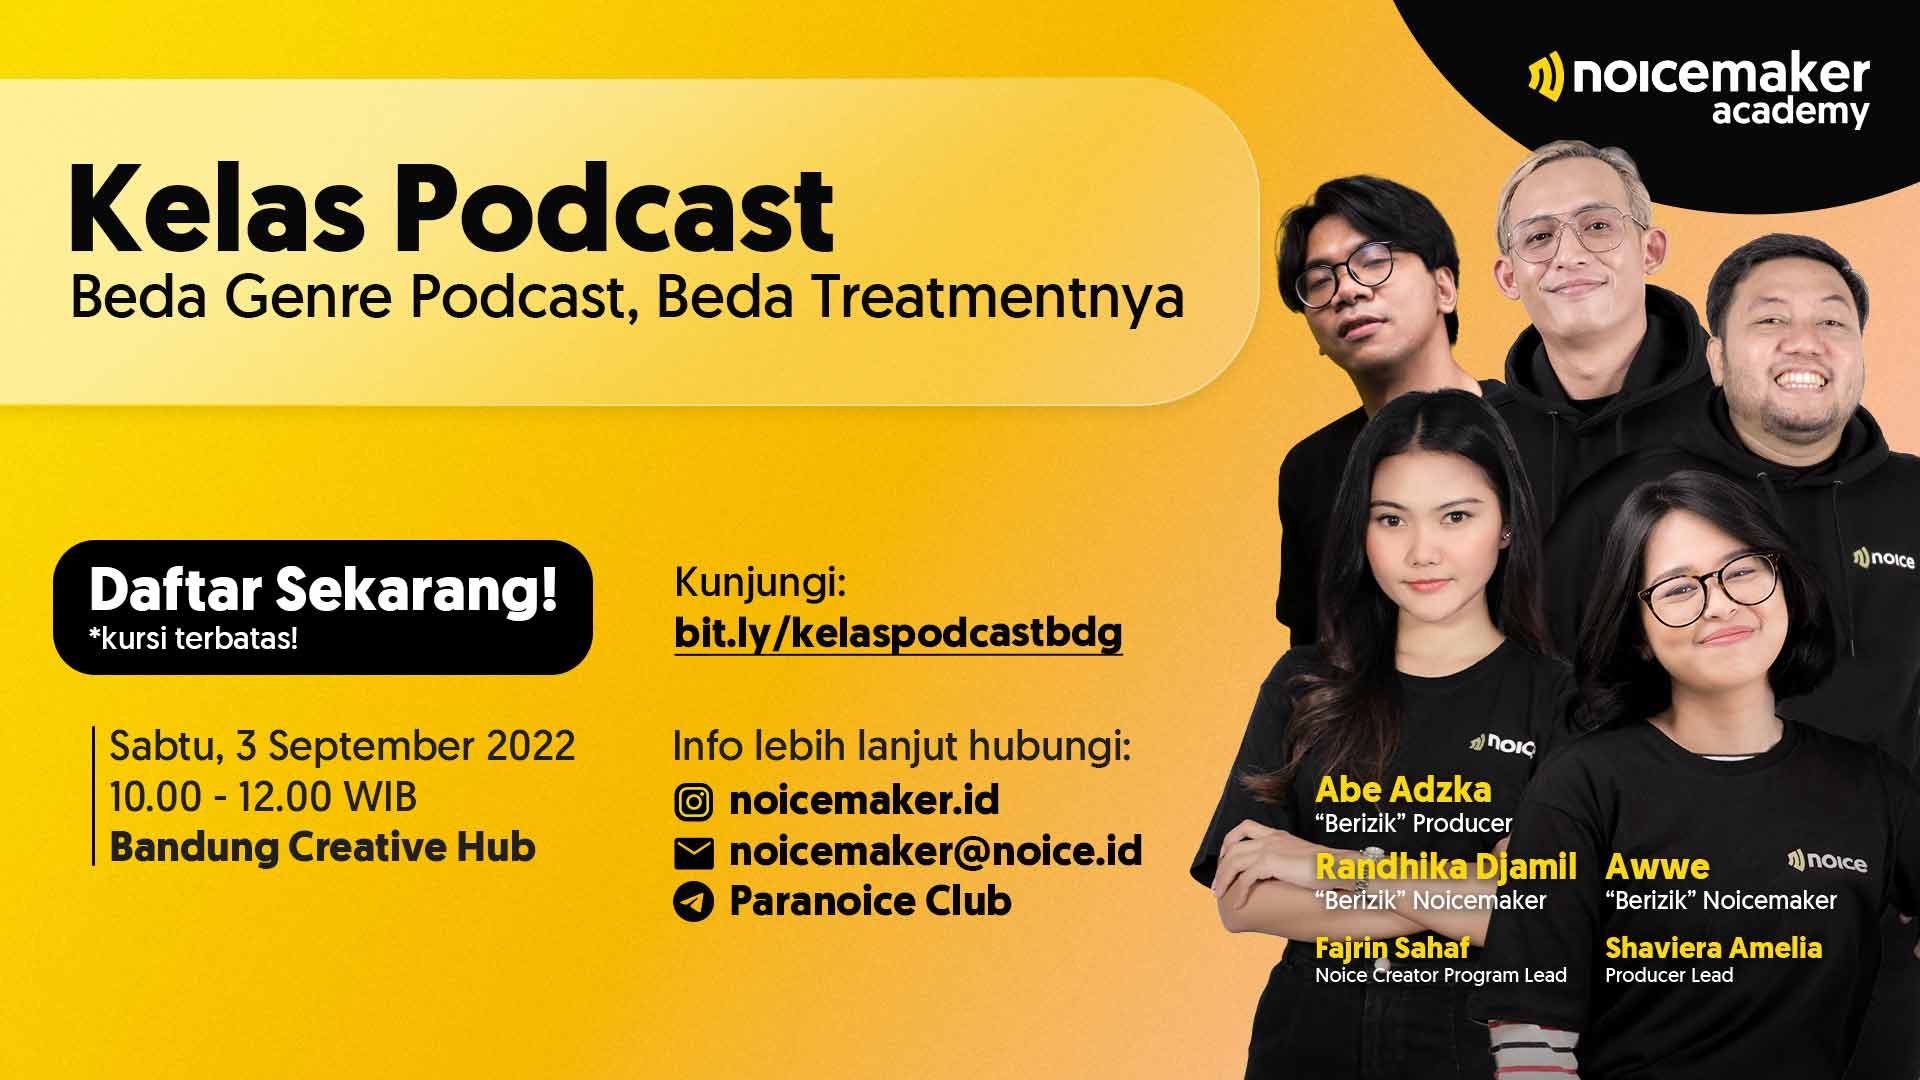 Kelas Podcast Bandung Noicemaker Academy - Noicemaker Academy